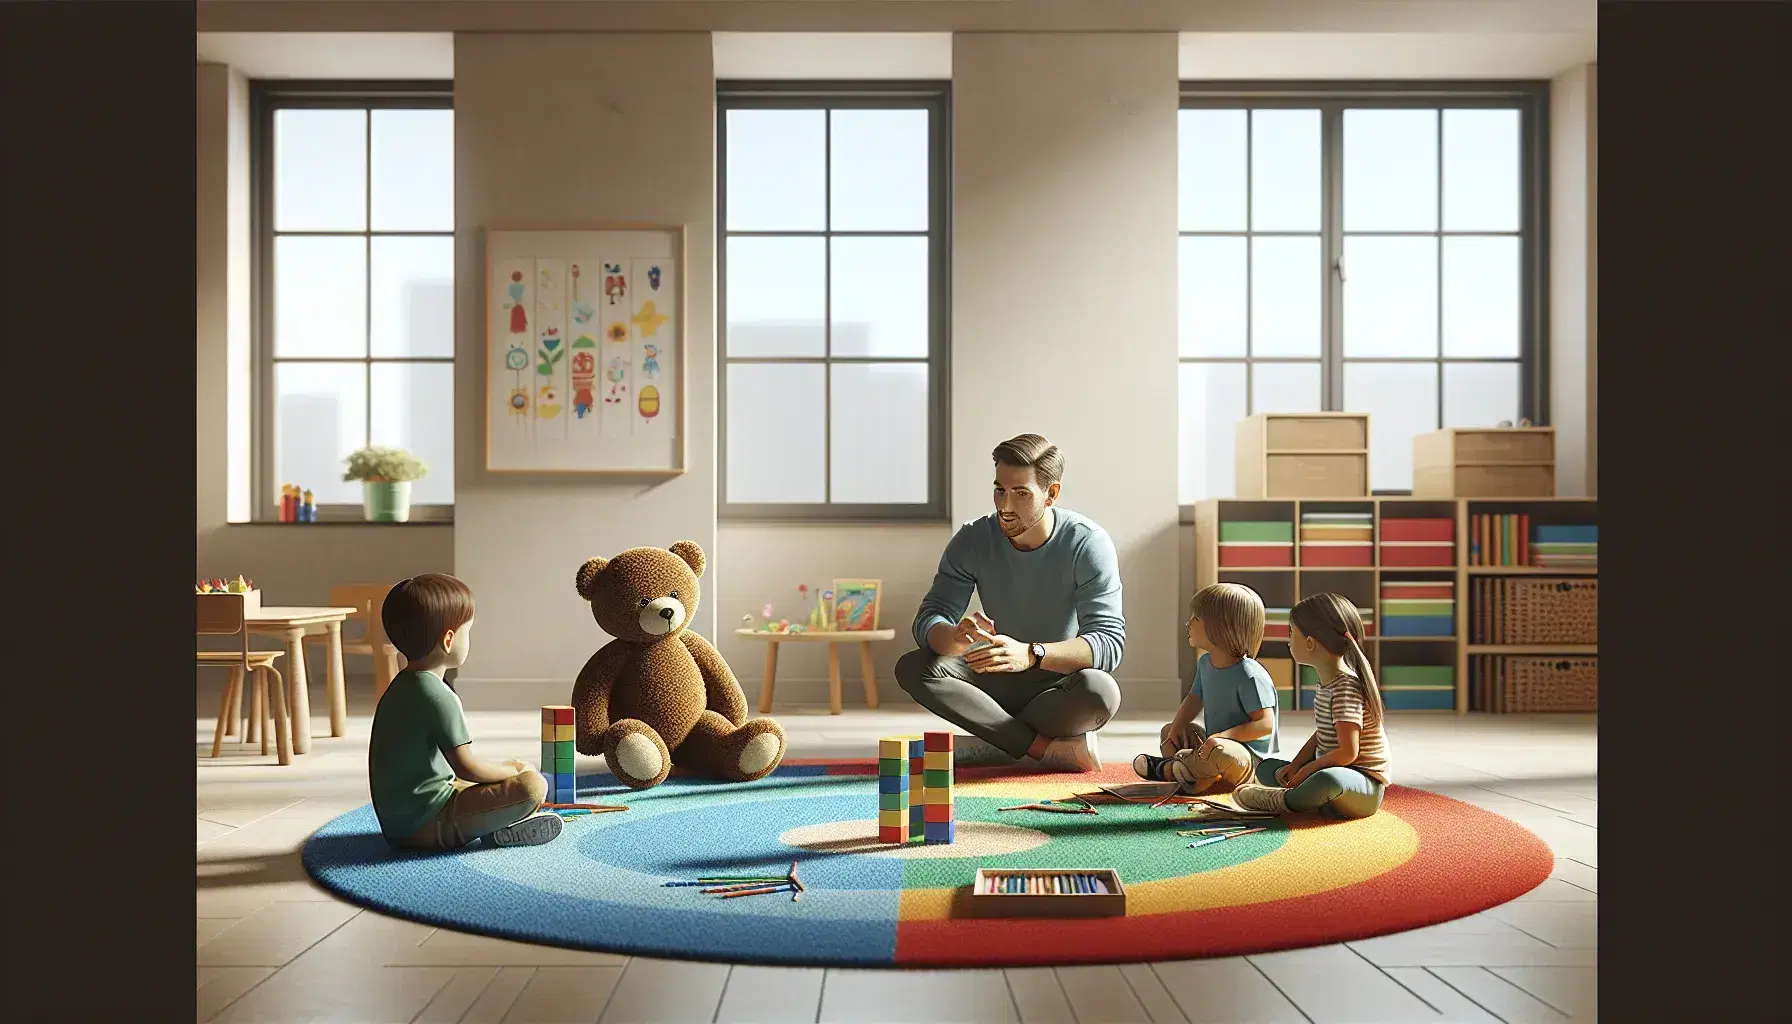 Adulto y tres niños participan en actividades educativas en un aula luminosa con alfombra colorida, juguetes y estanterías con libros.